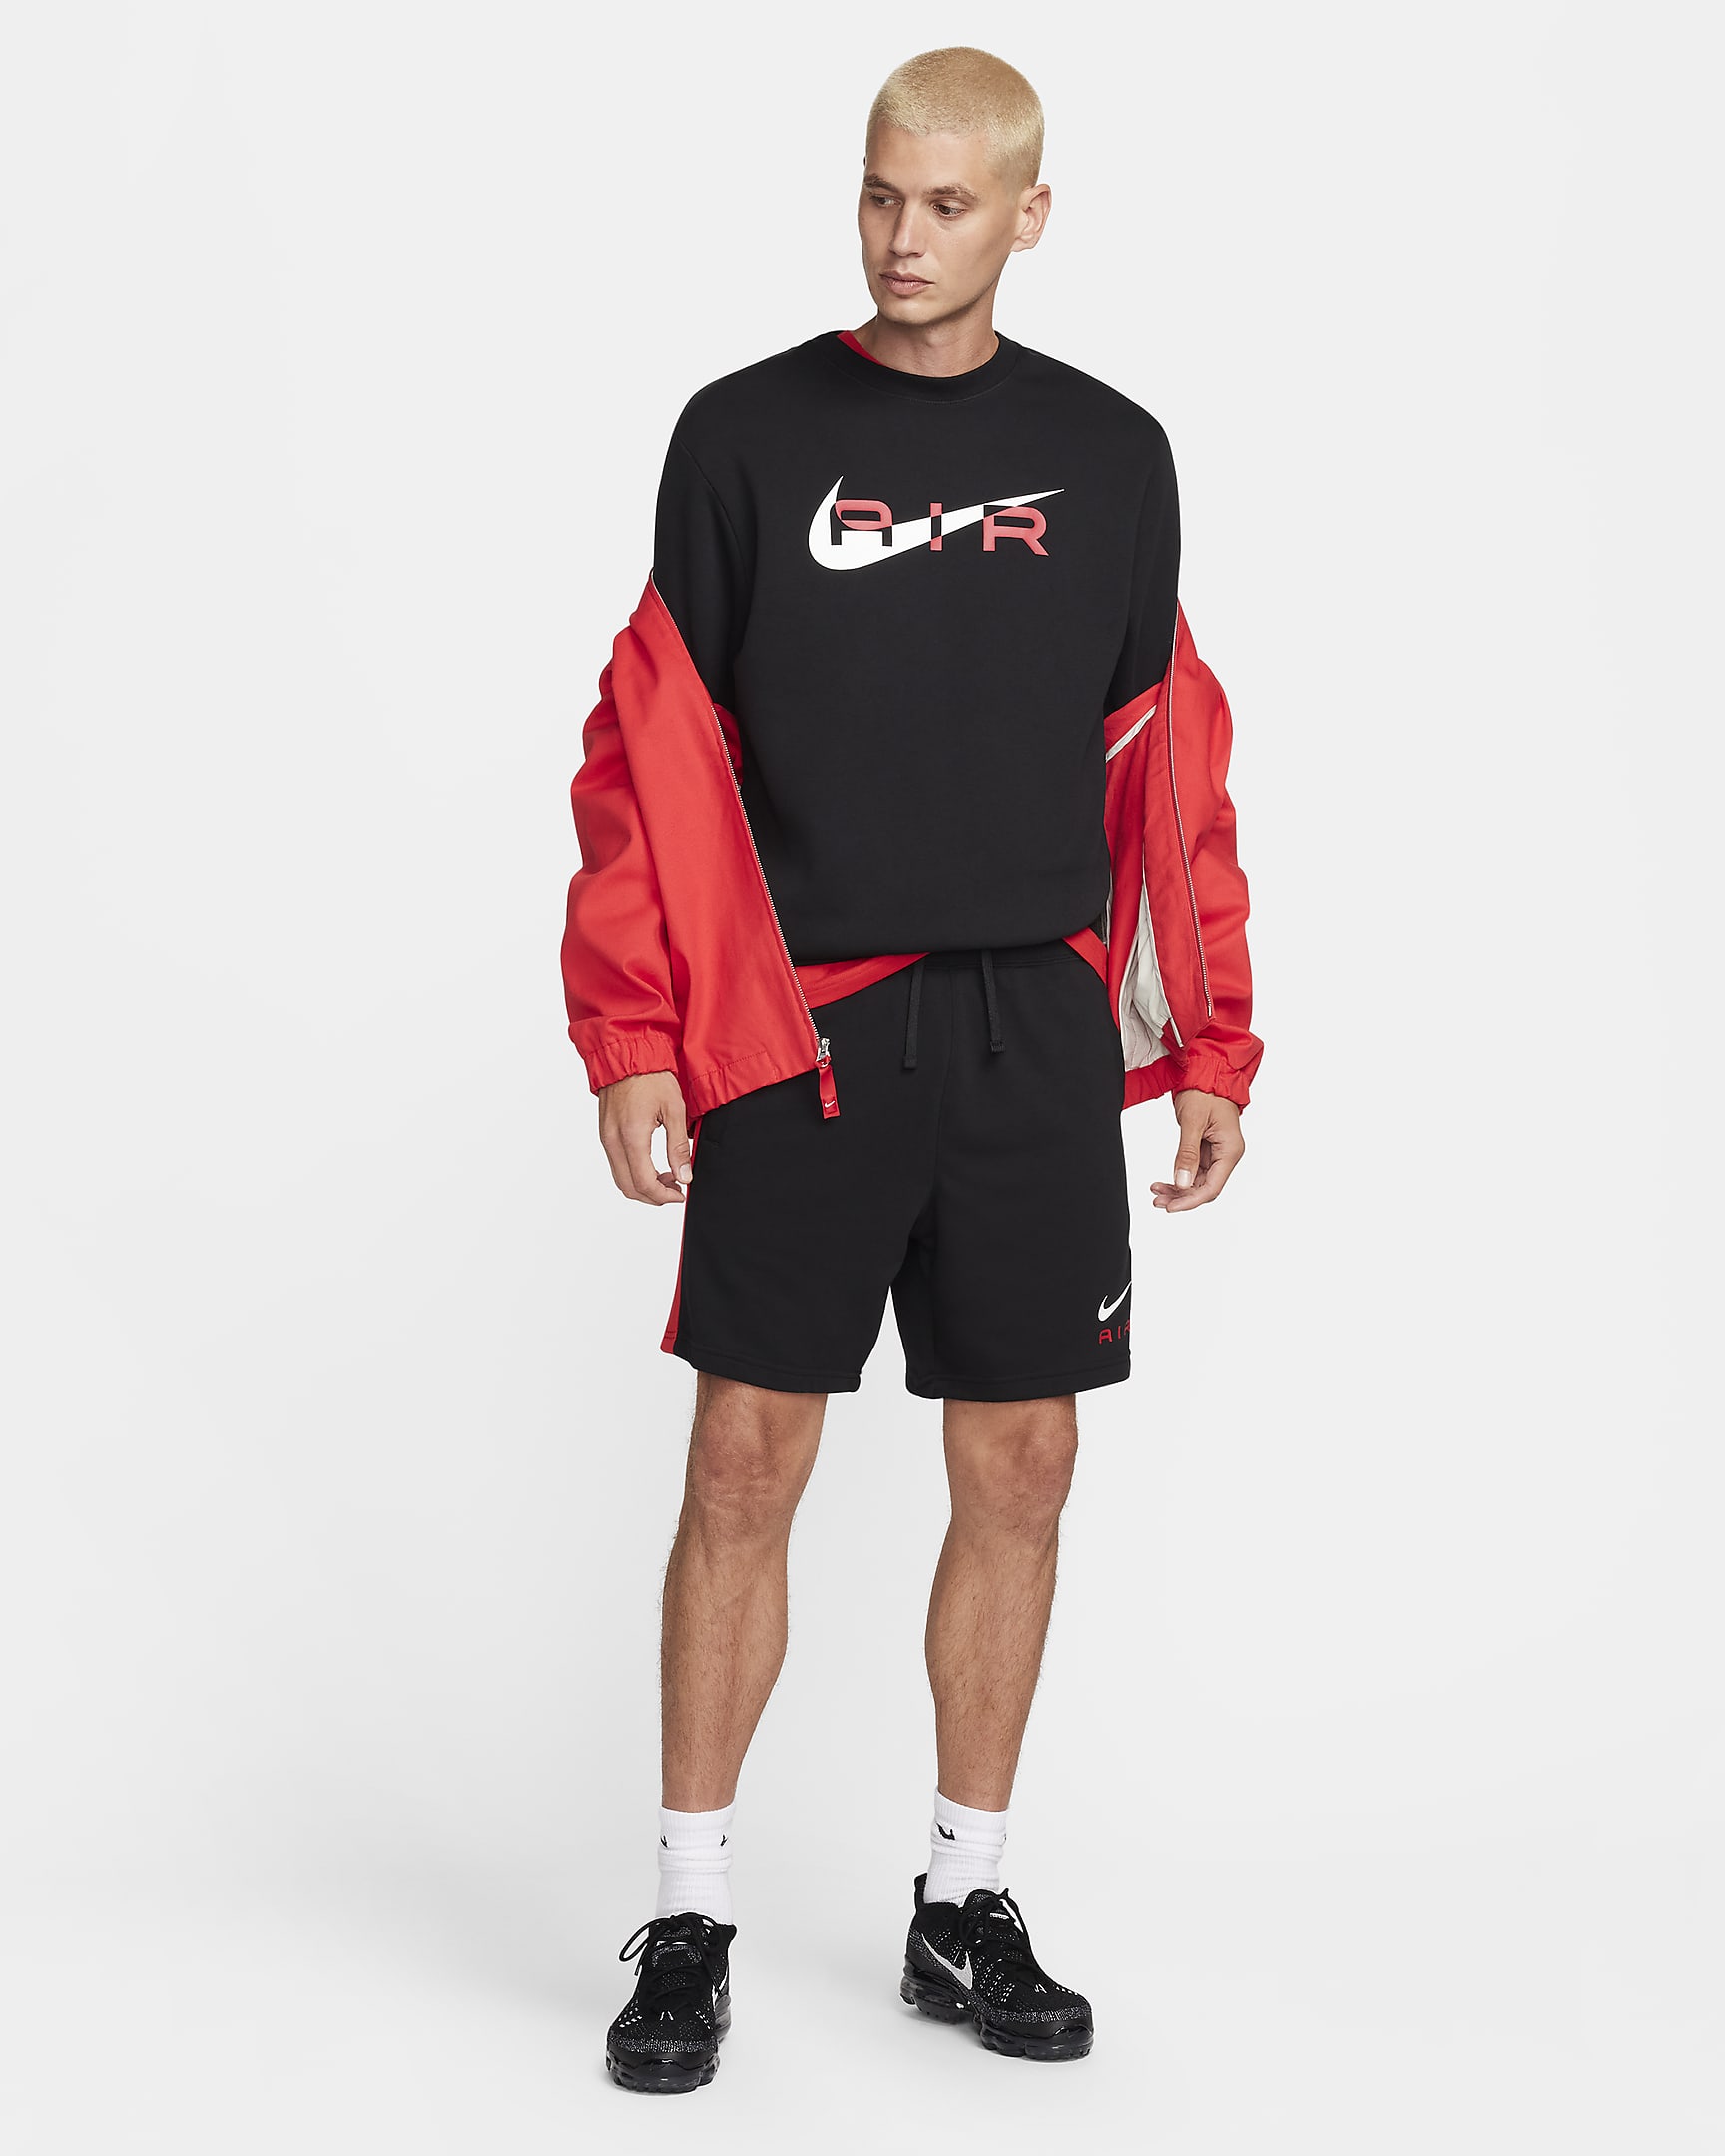 Nike Air Men's Fleece Crew-Neck Sweatshirt. Nike HR